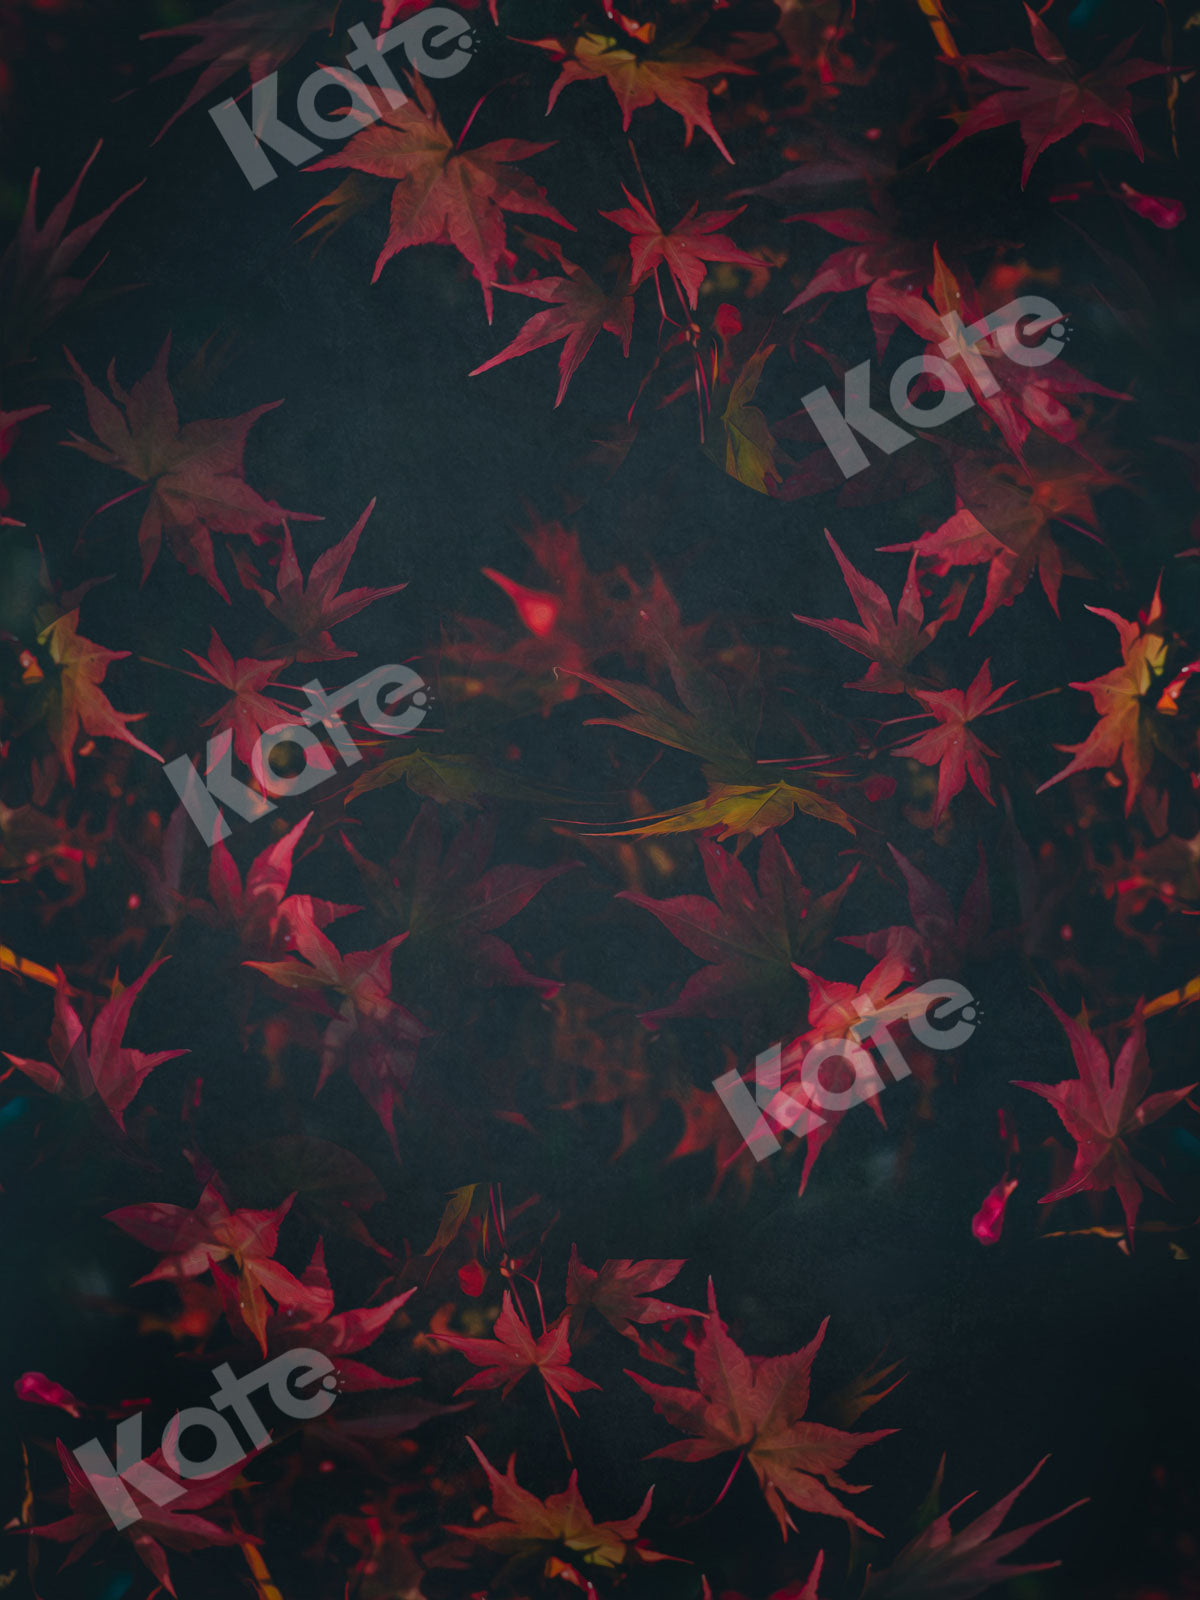 Kate レトロな赤い花暗い写真の背景